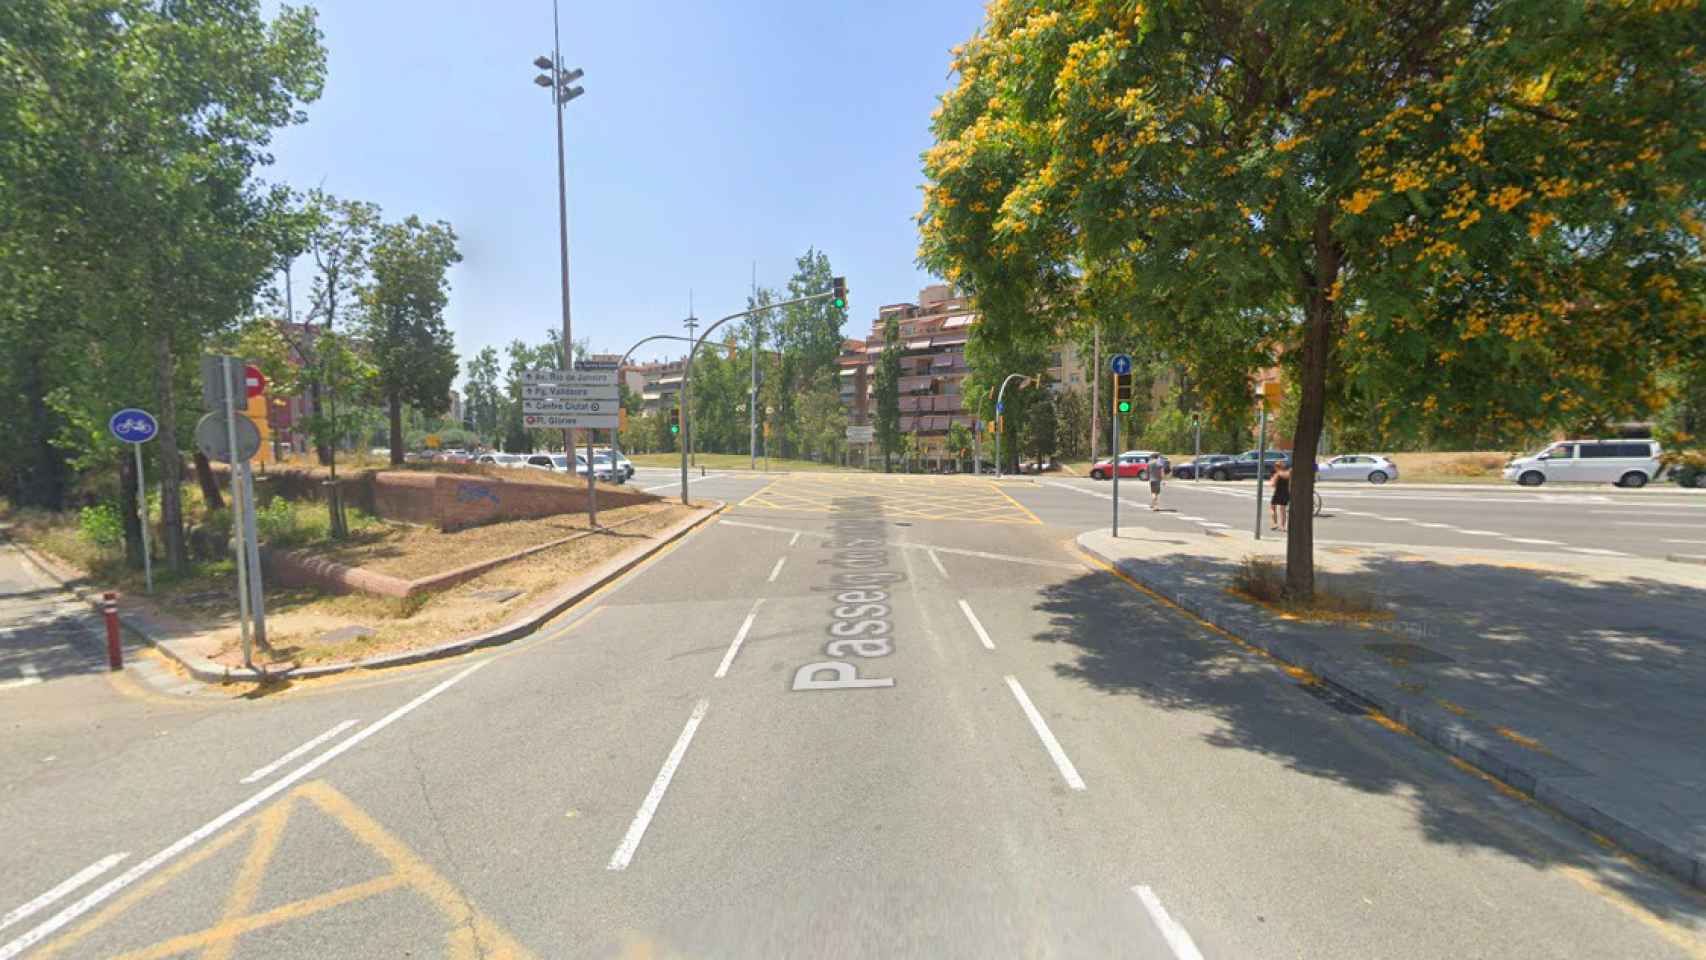 Paseo de Santa Coloma con avenida Meridiana, confluencia en la que se produjo la colisión mortal entre el motorista y el coche / GOOGLE MAPS